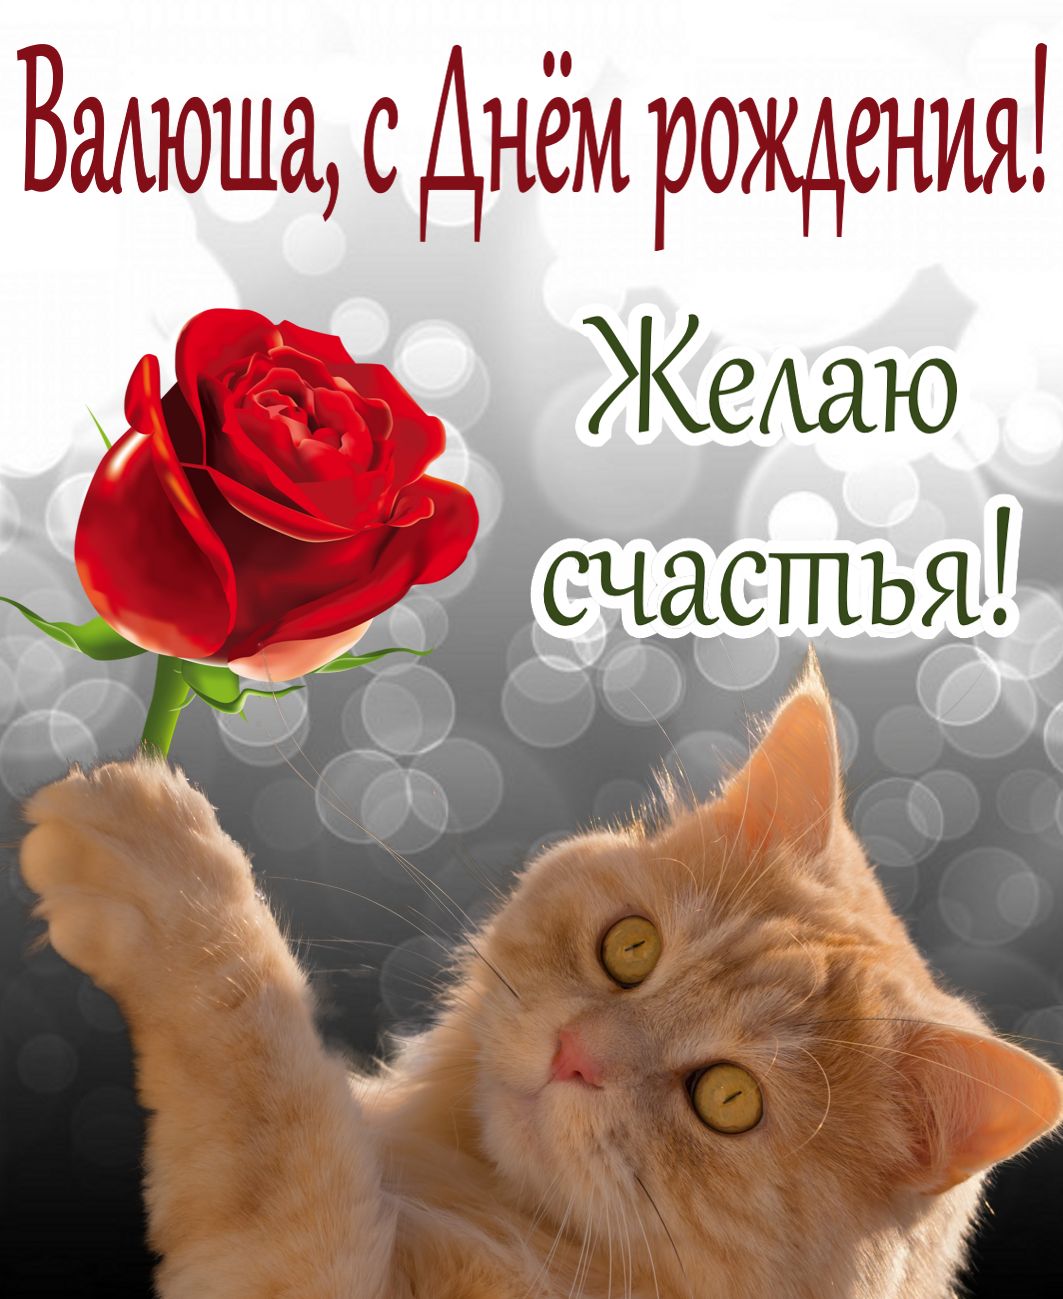 Рыжий котик с красной розой для Вали